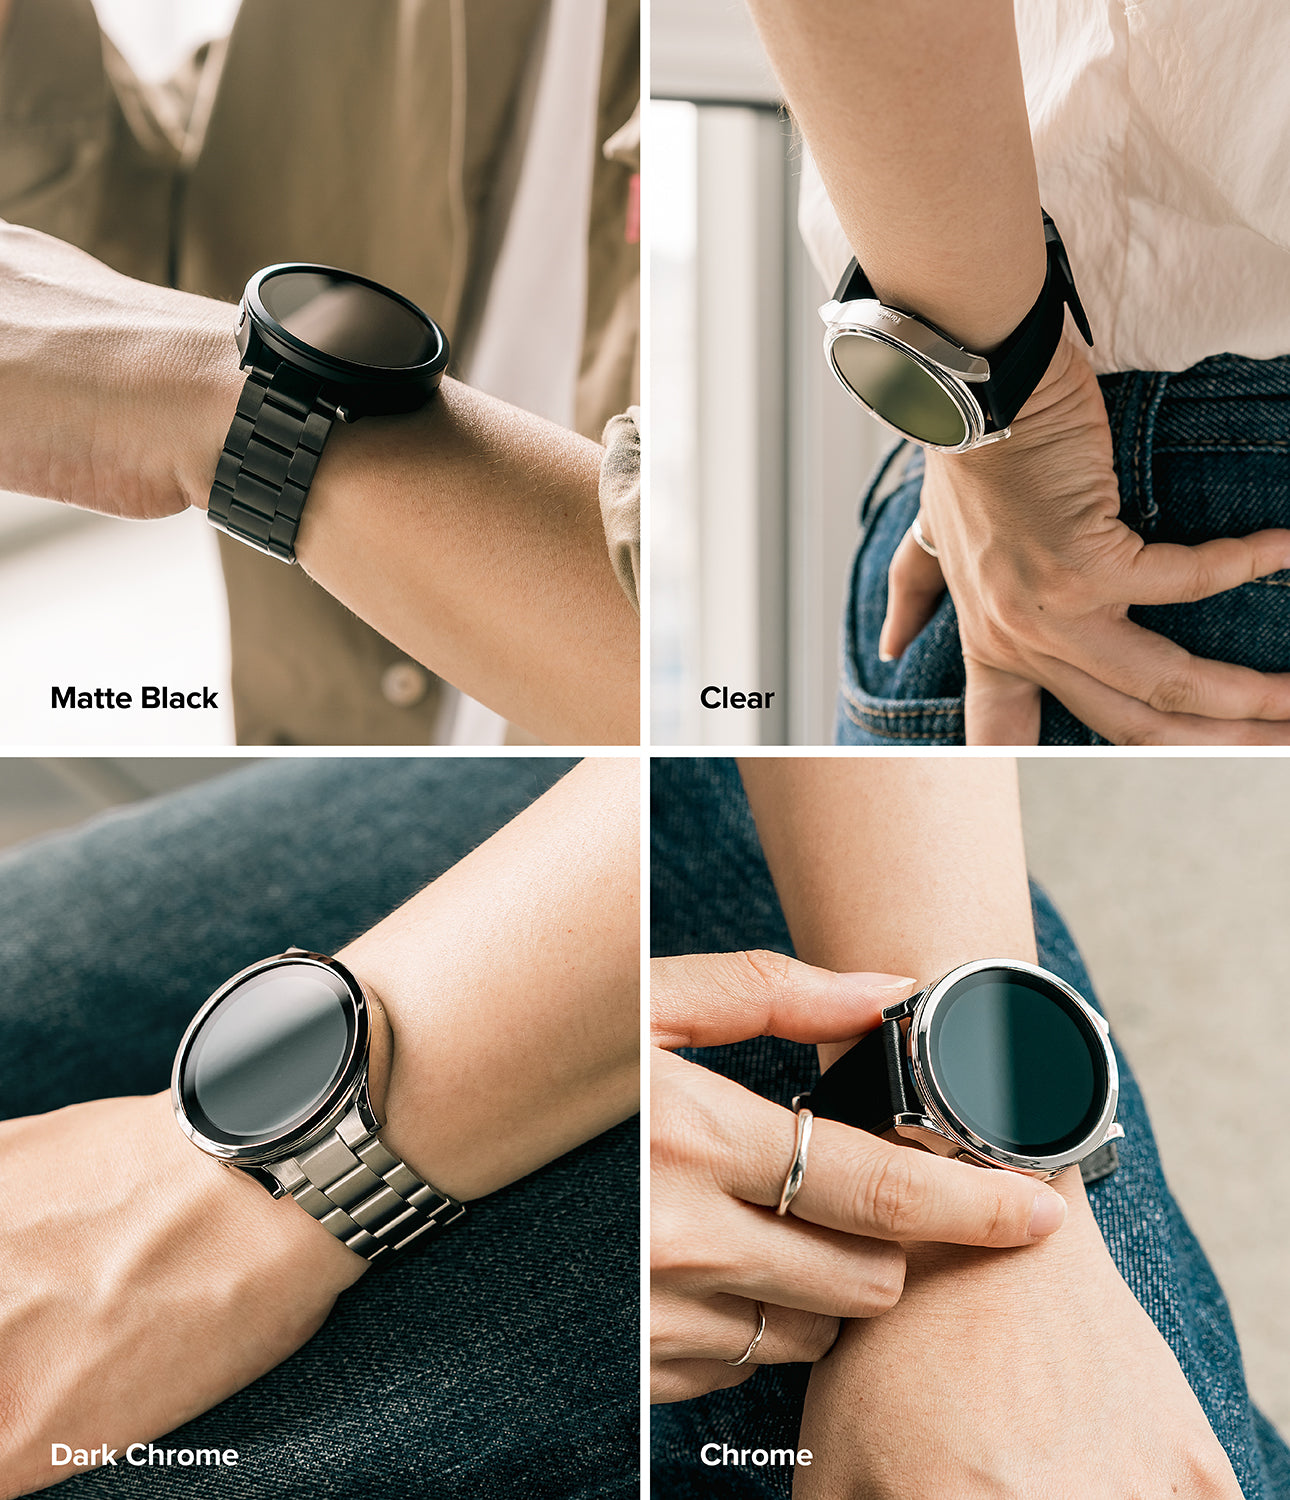 Galaxy Watch 6 Classic 43mm Case | Slim